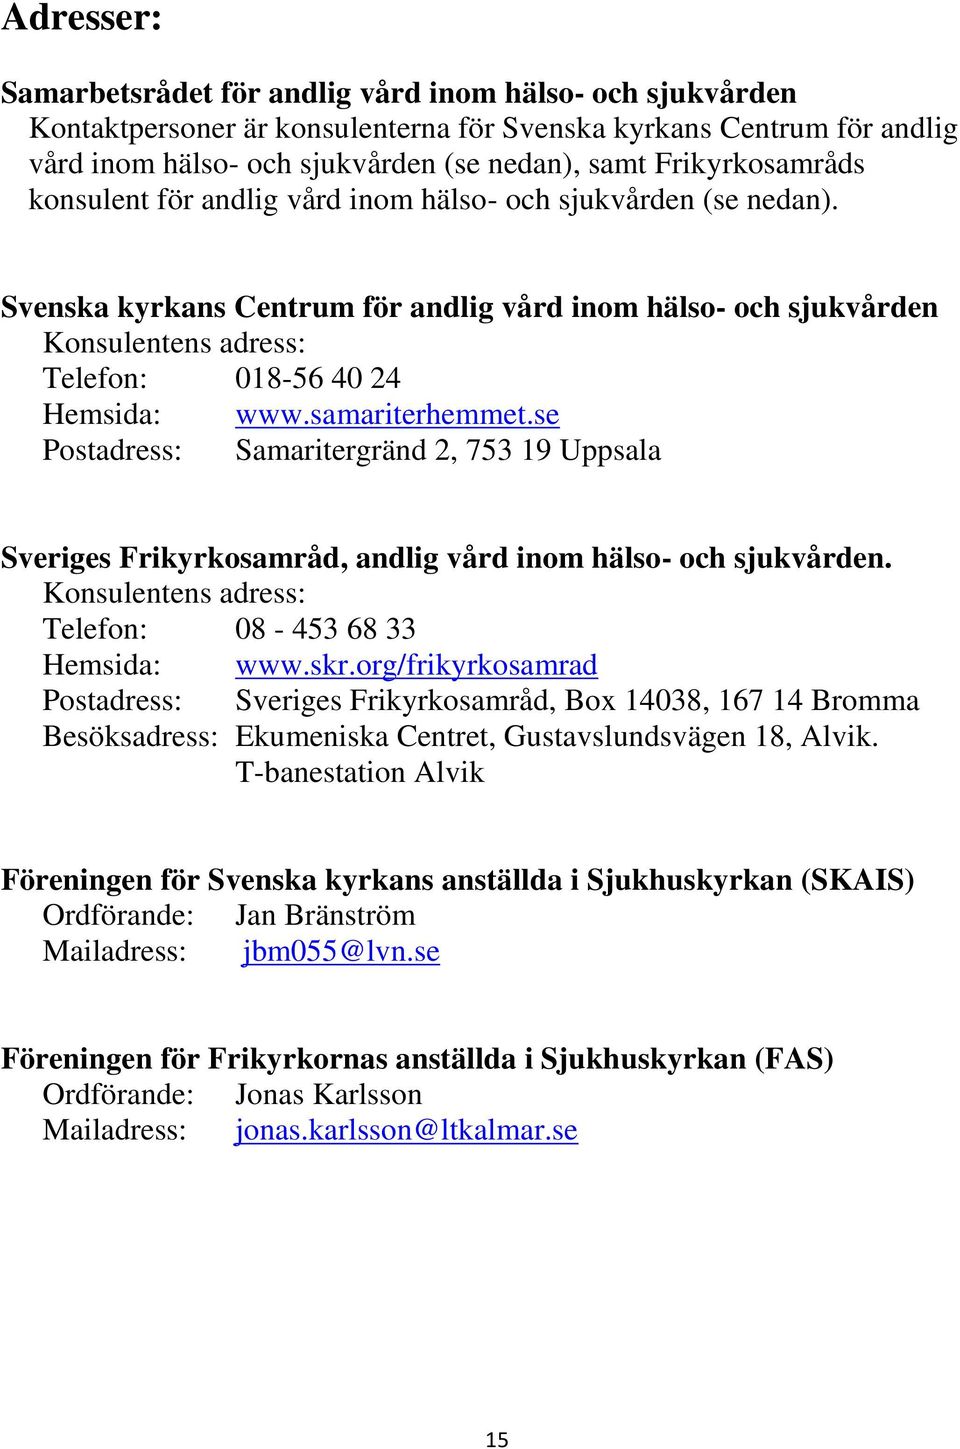 Svenska kyrkans Centrum för andlig vård inom hälso- och sjukvården Konsulentens adress: Telefon: 018-56 40 24 Hemsida: www.samariterhemmet.